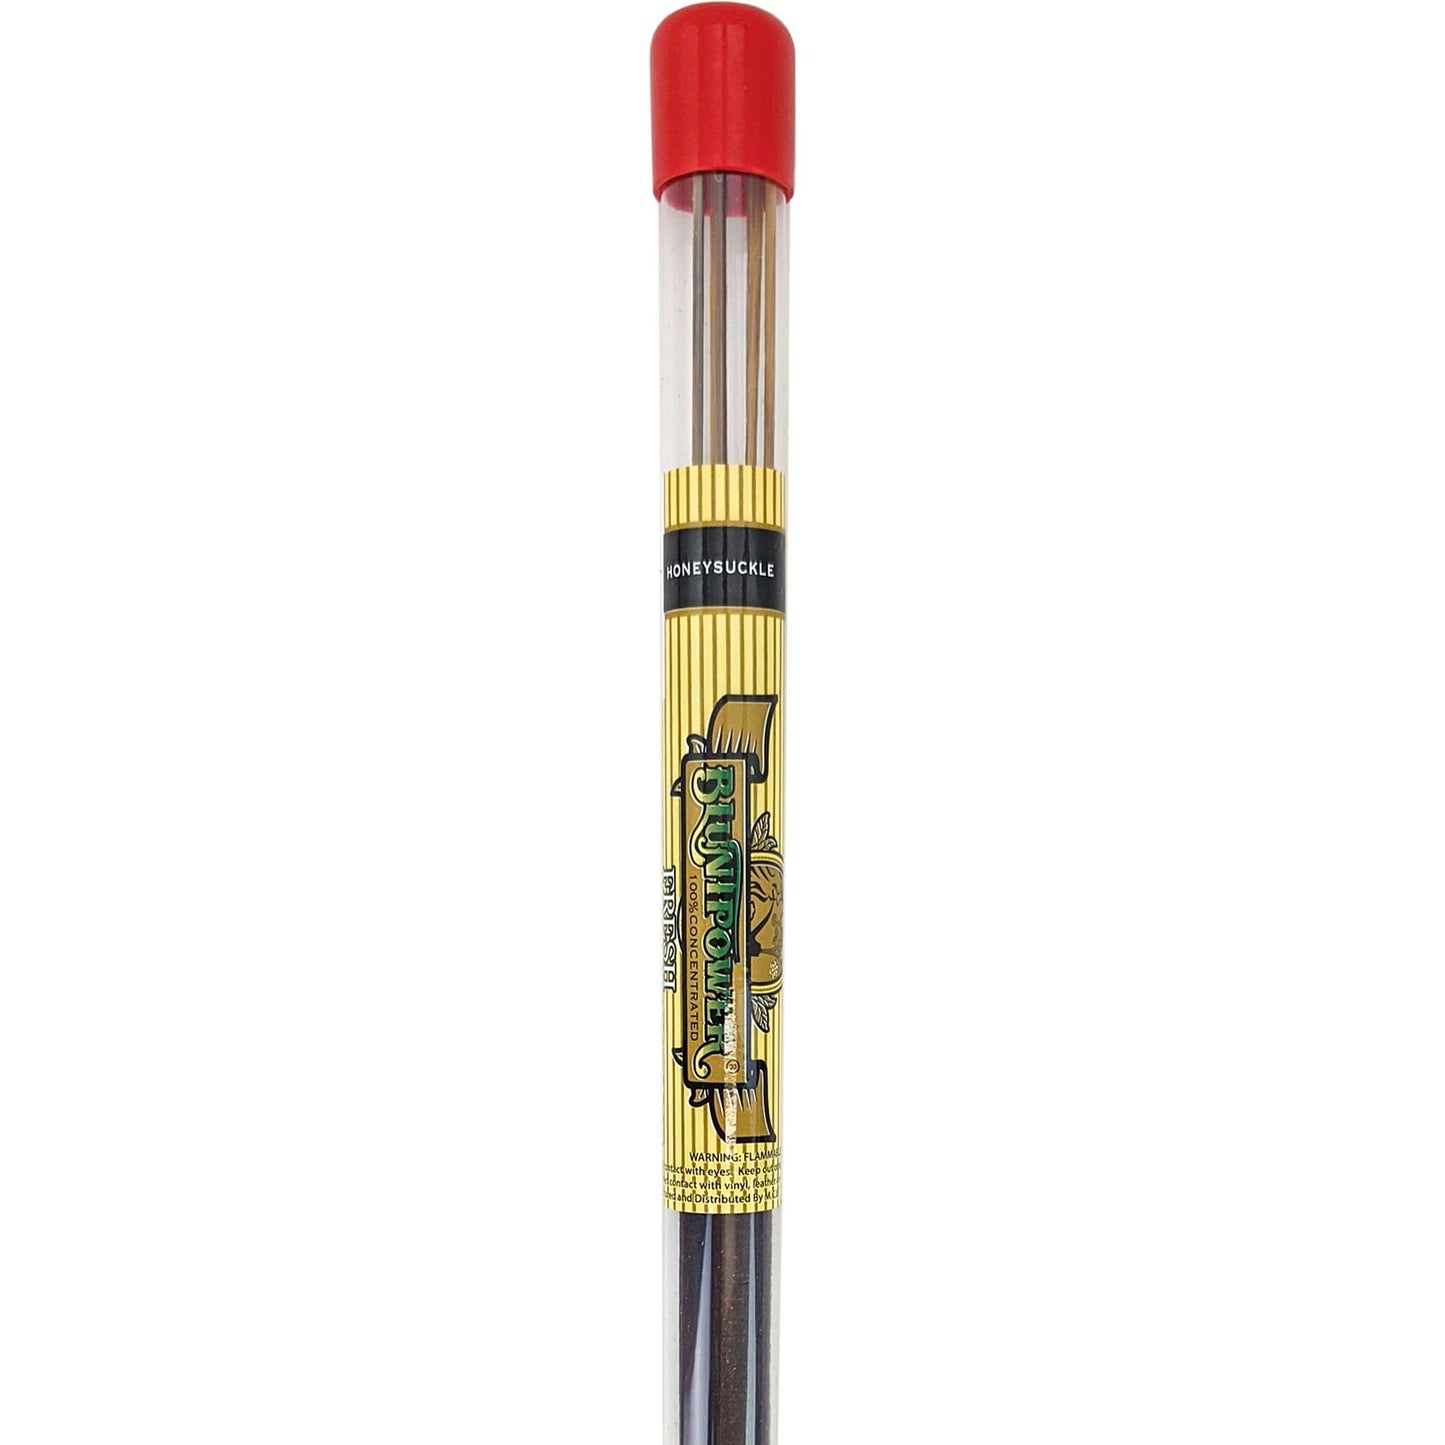 Honeysuckle Scent Blunt Power 17" Incense Sticks, 5-7 Sticks